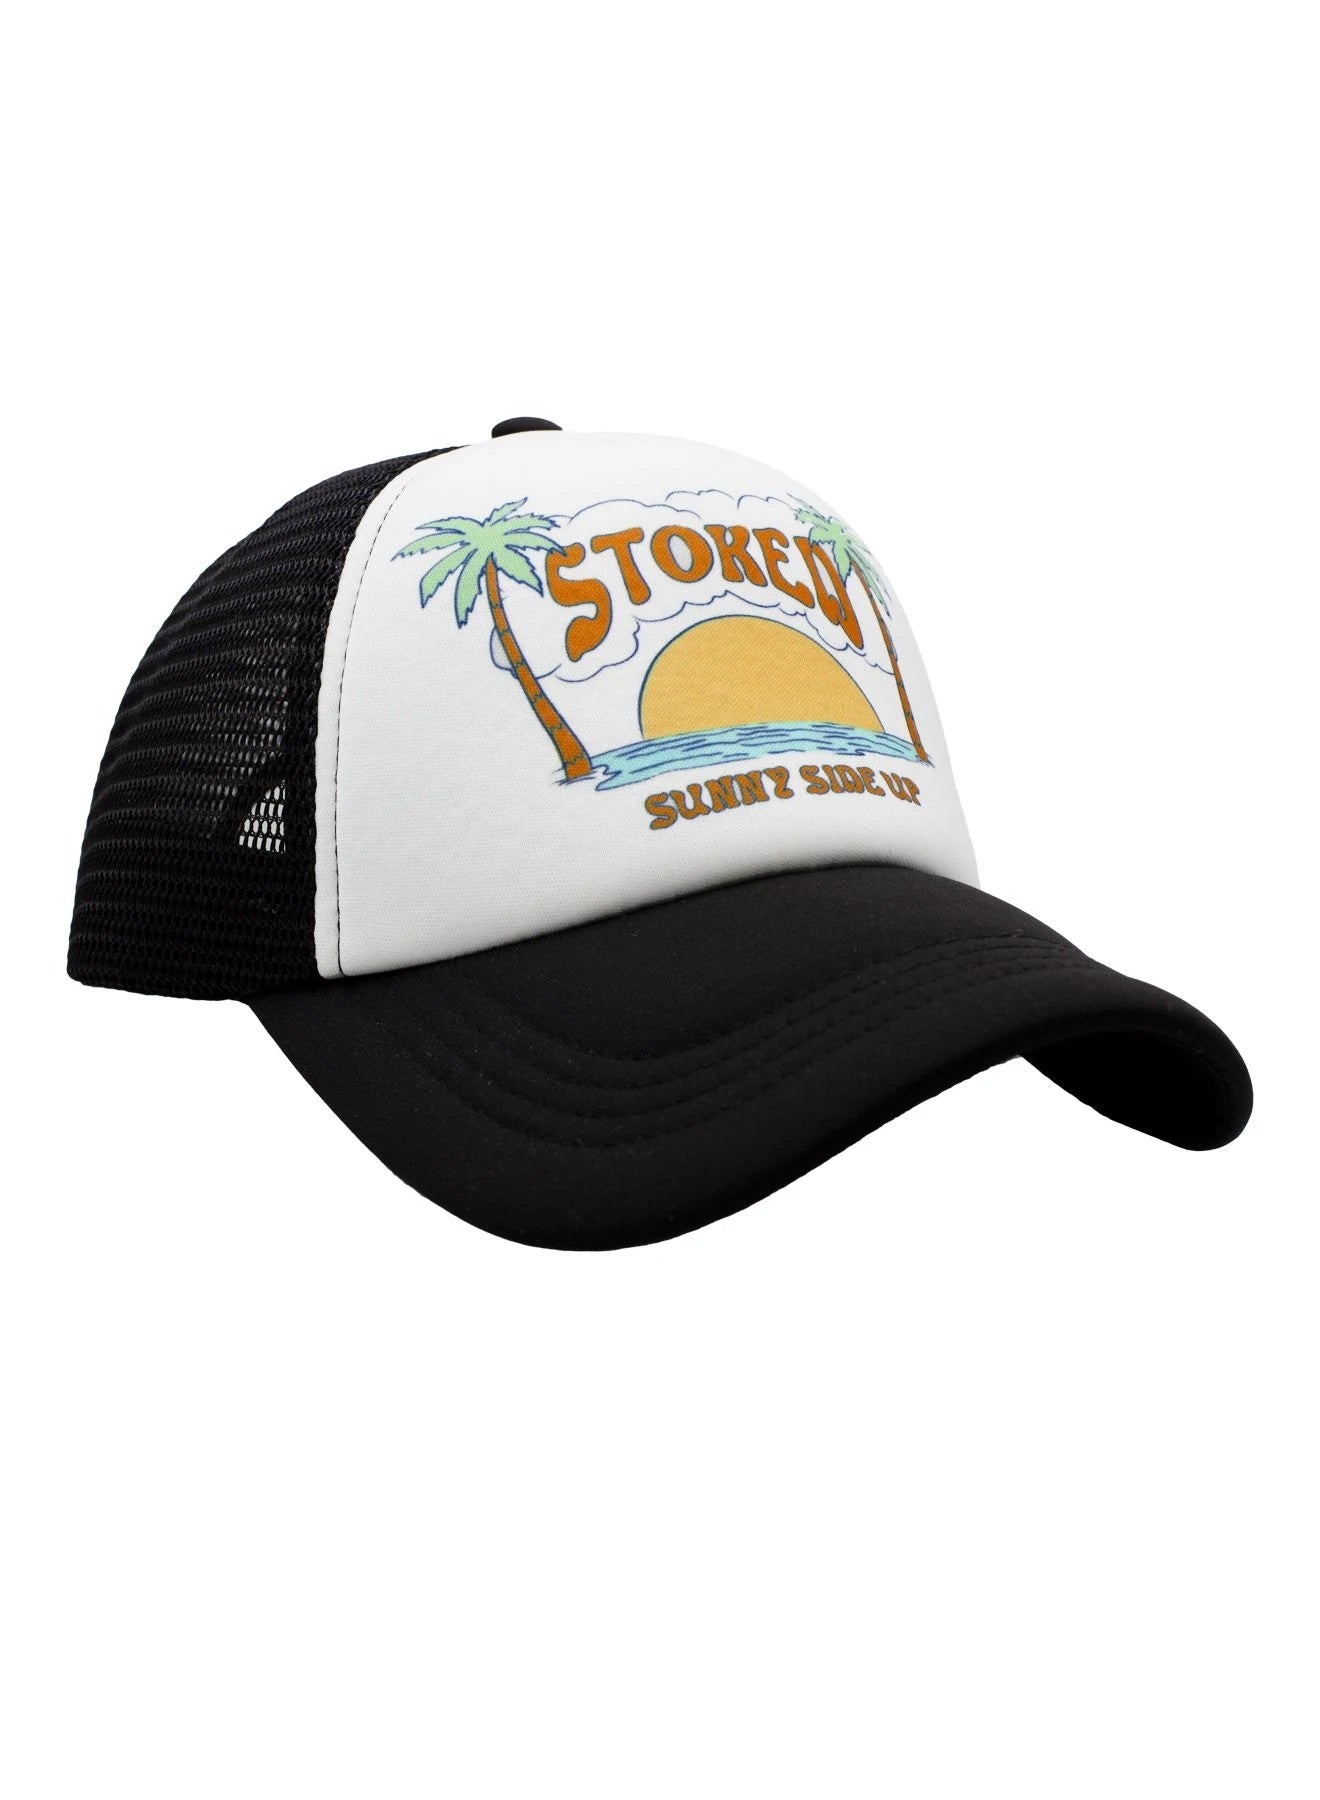 Sunny Side Up Trucker Hat - Black/White